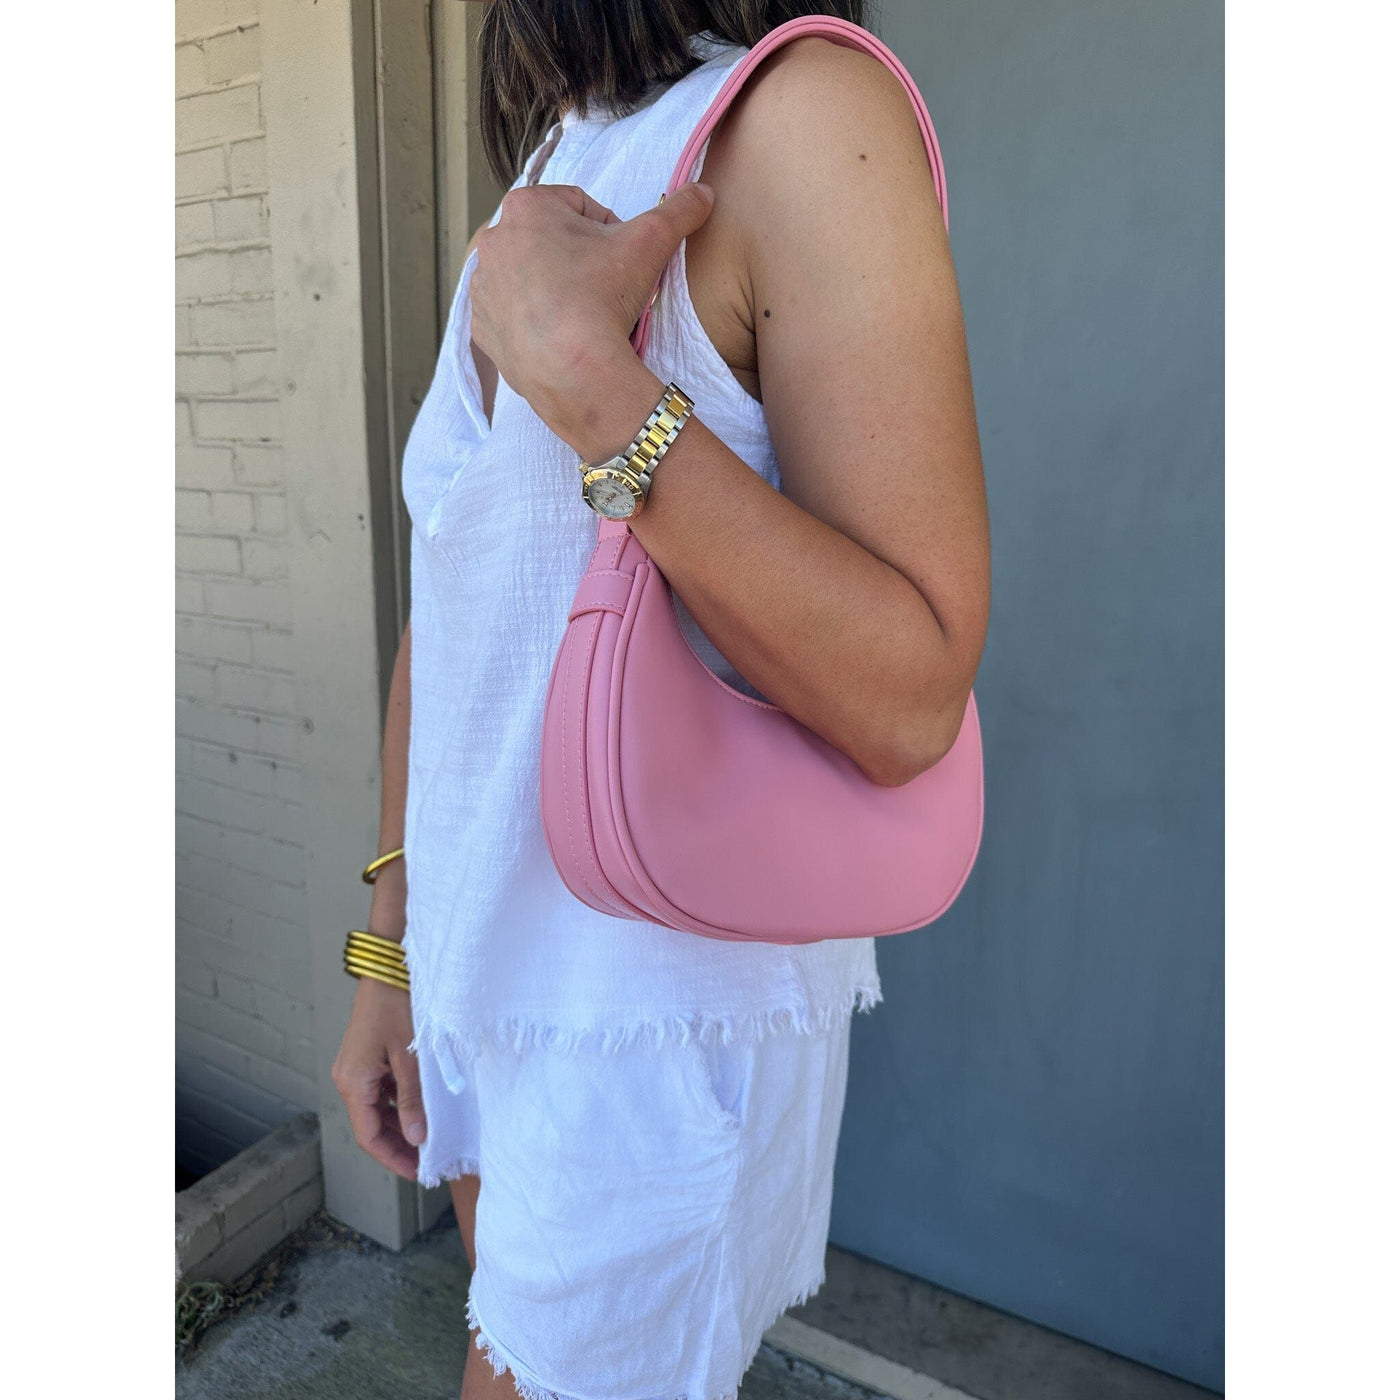 Pink Caroline Hill handbag